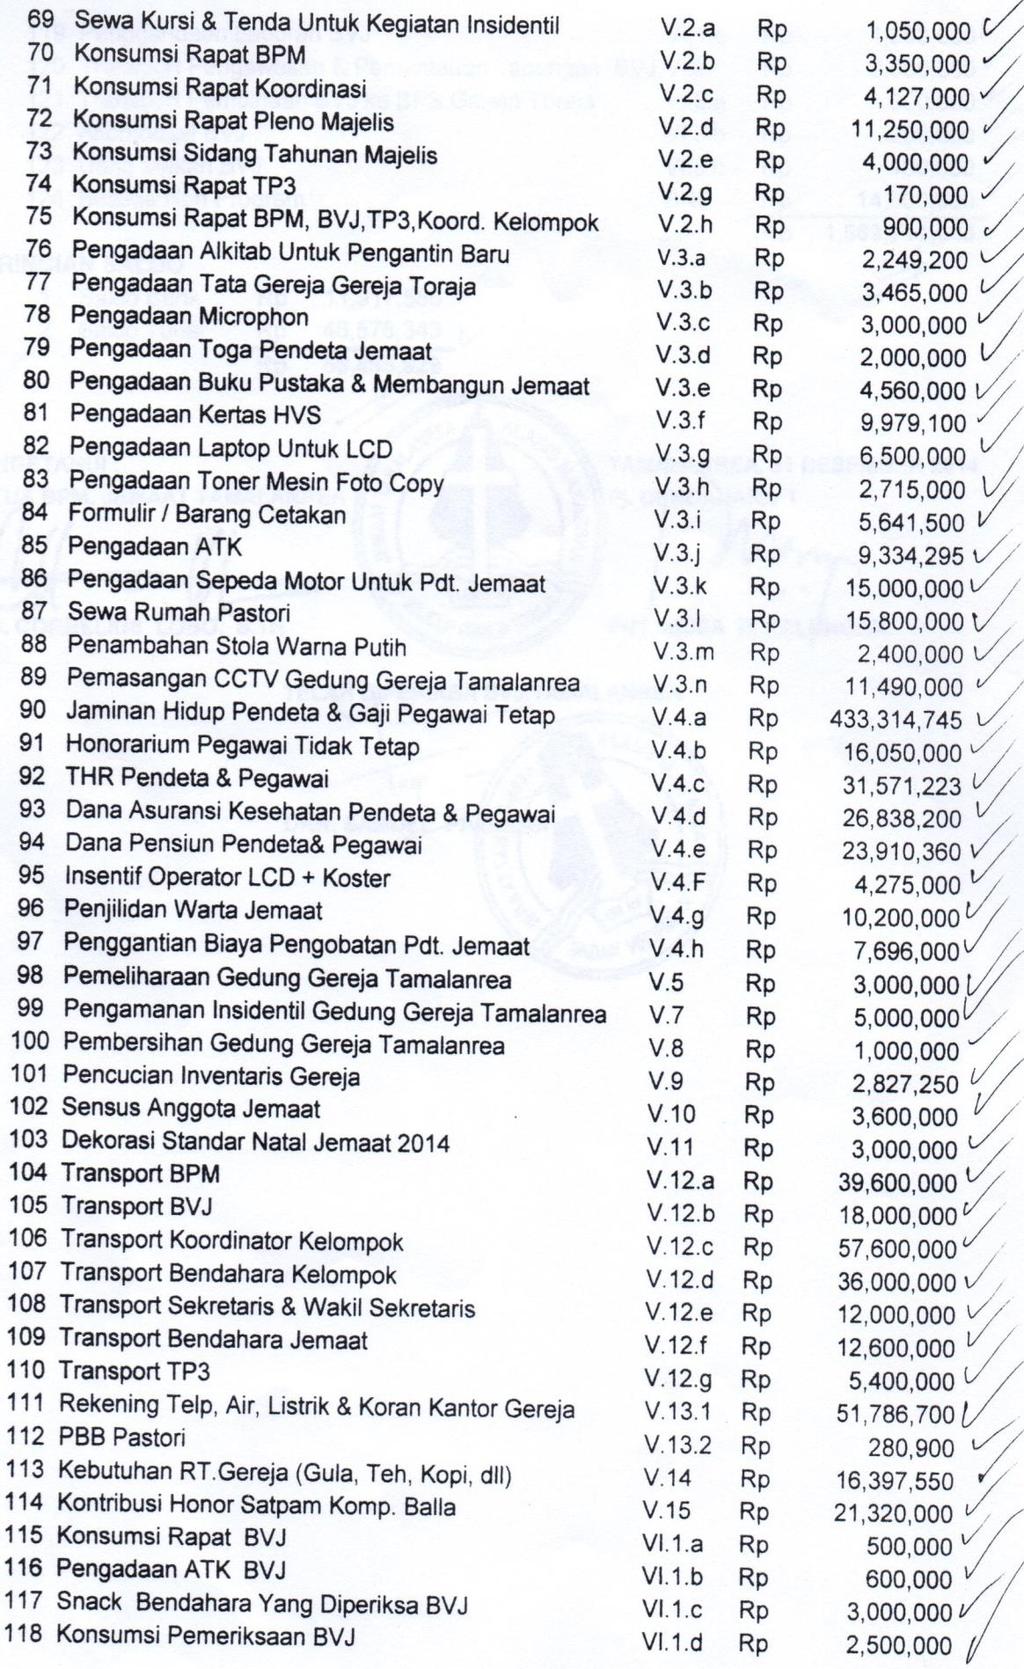 Skripsi Evaluasi Penyusunan Laporan Keuangan Menurut Psak 45 Pada Gereja Toraja Klasis Makassar Jemaat Tamalanrea Eriek Kurniawan Koe Pdf Free Download